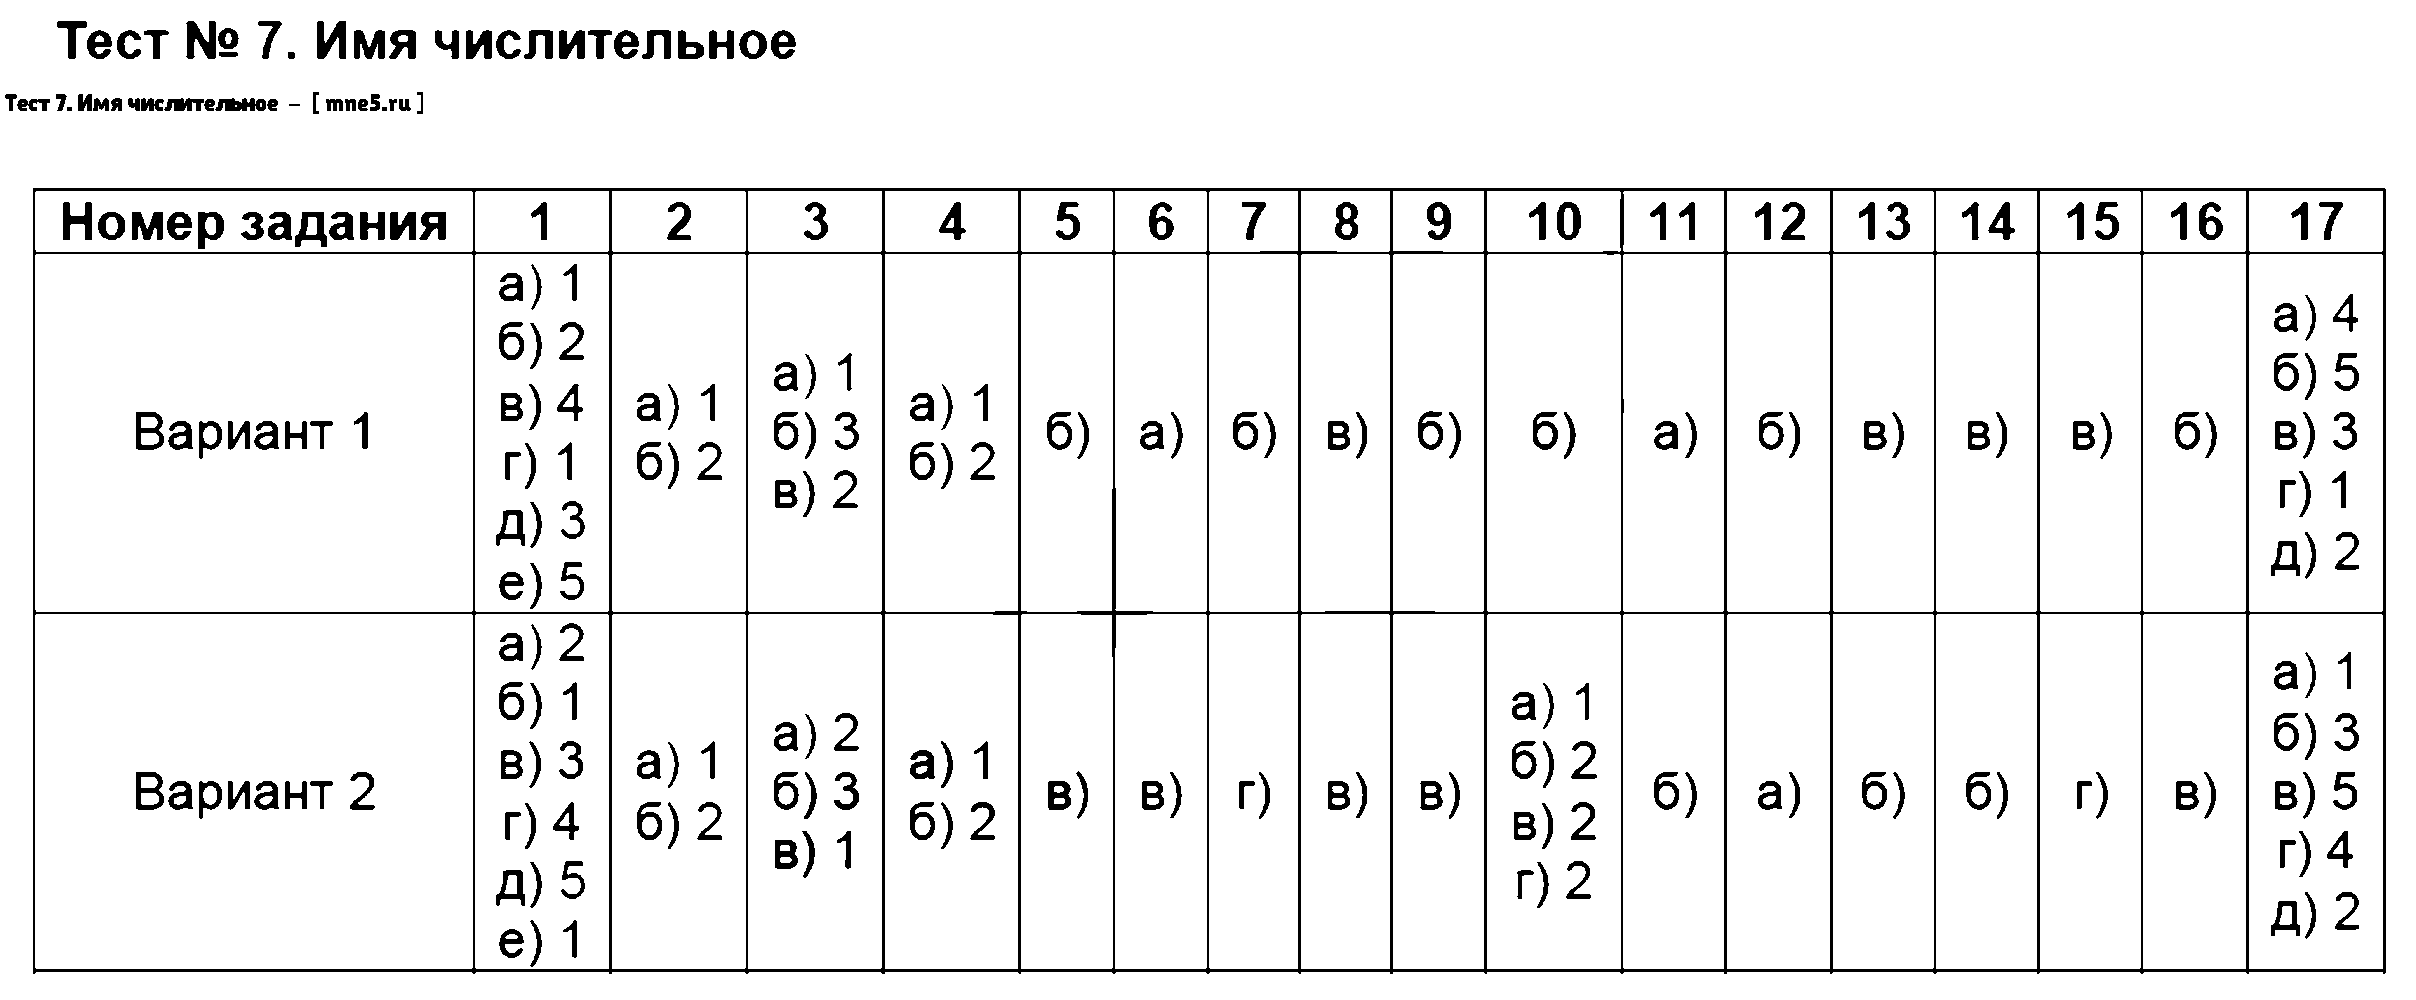 ГДЗ Русский язык 6 класс - Тест 7. Имя числительное